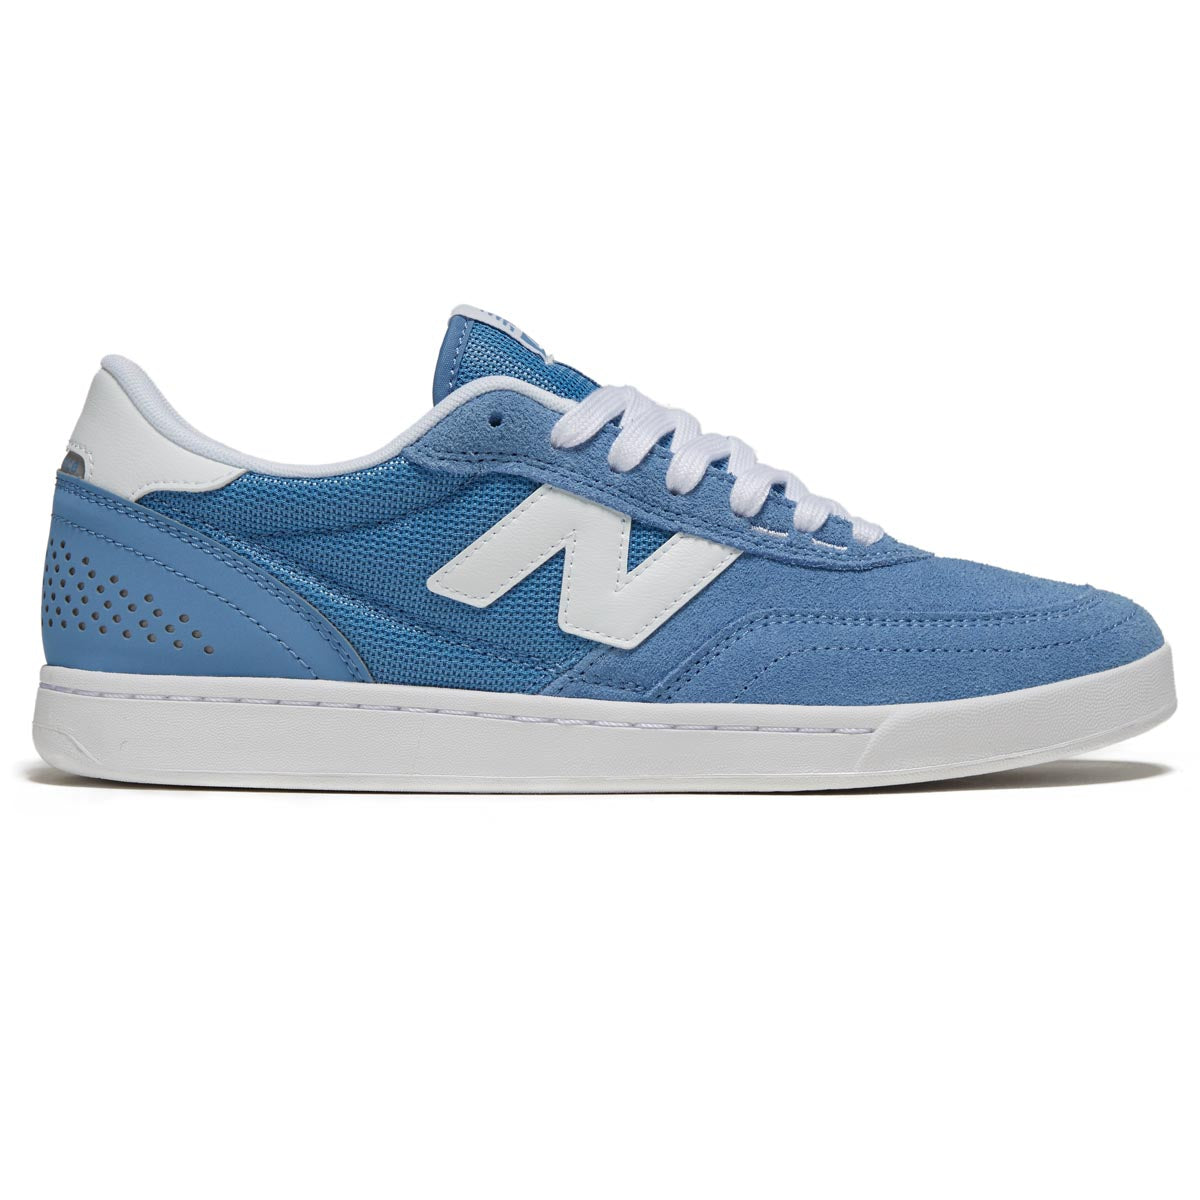 New Balance 440 V2 Shoes - Blue image 1